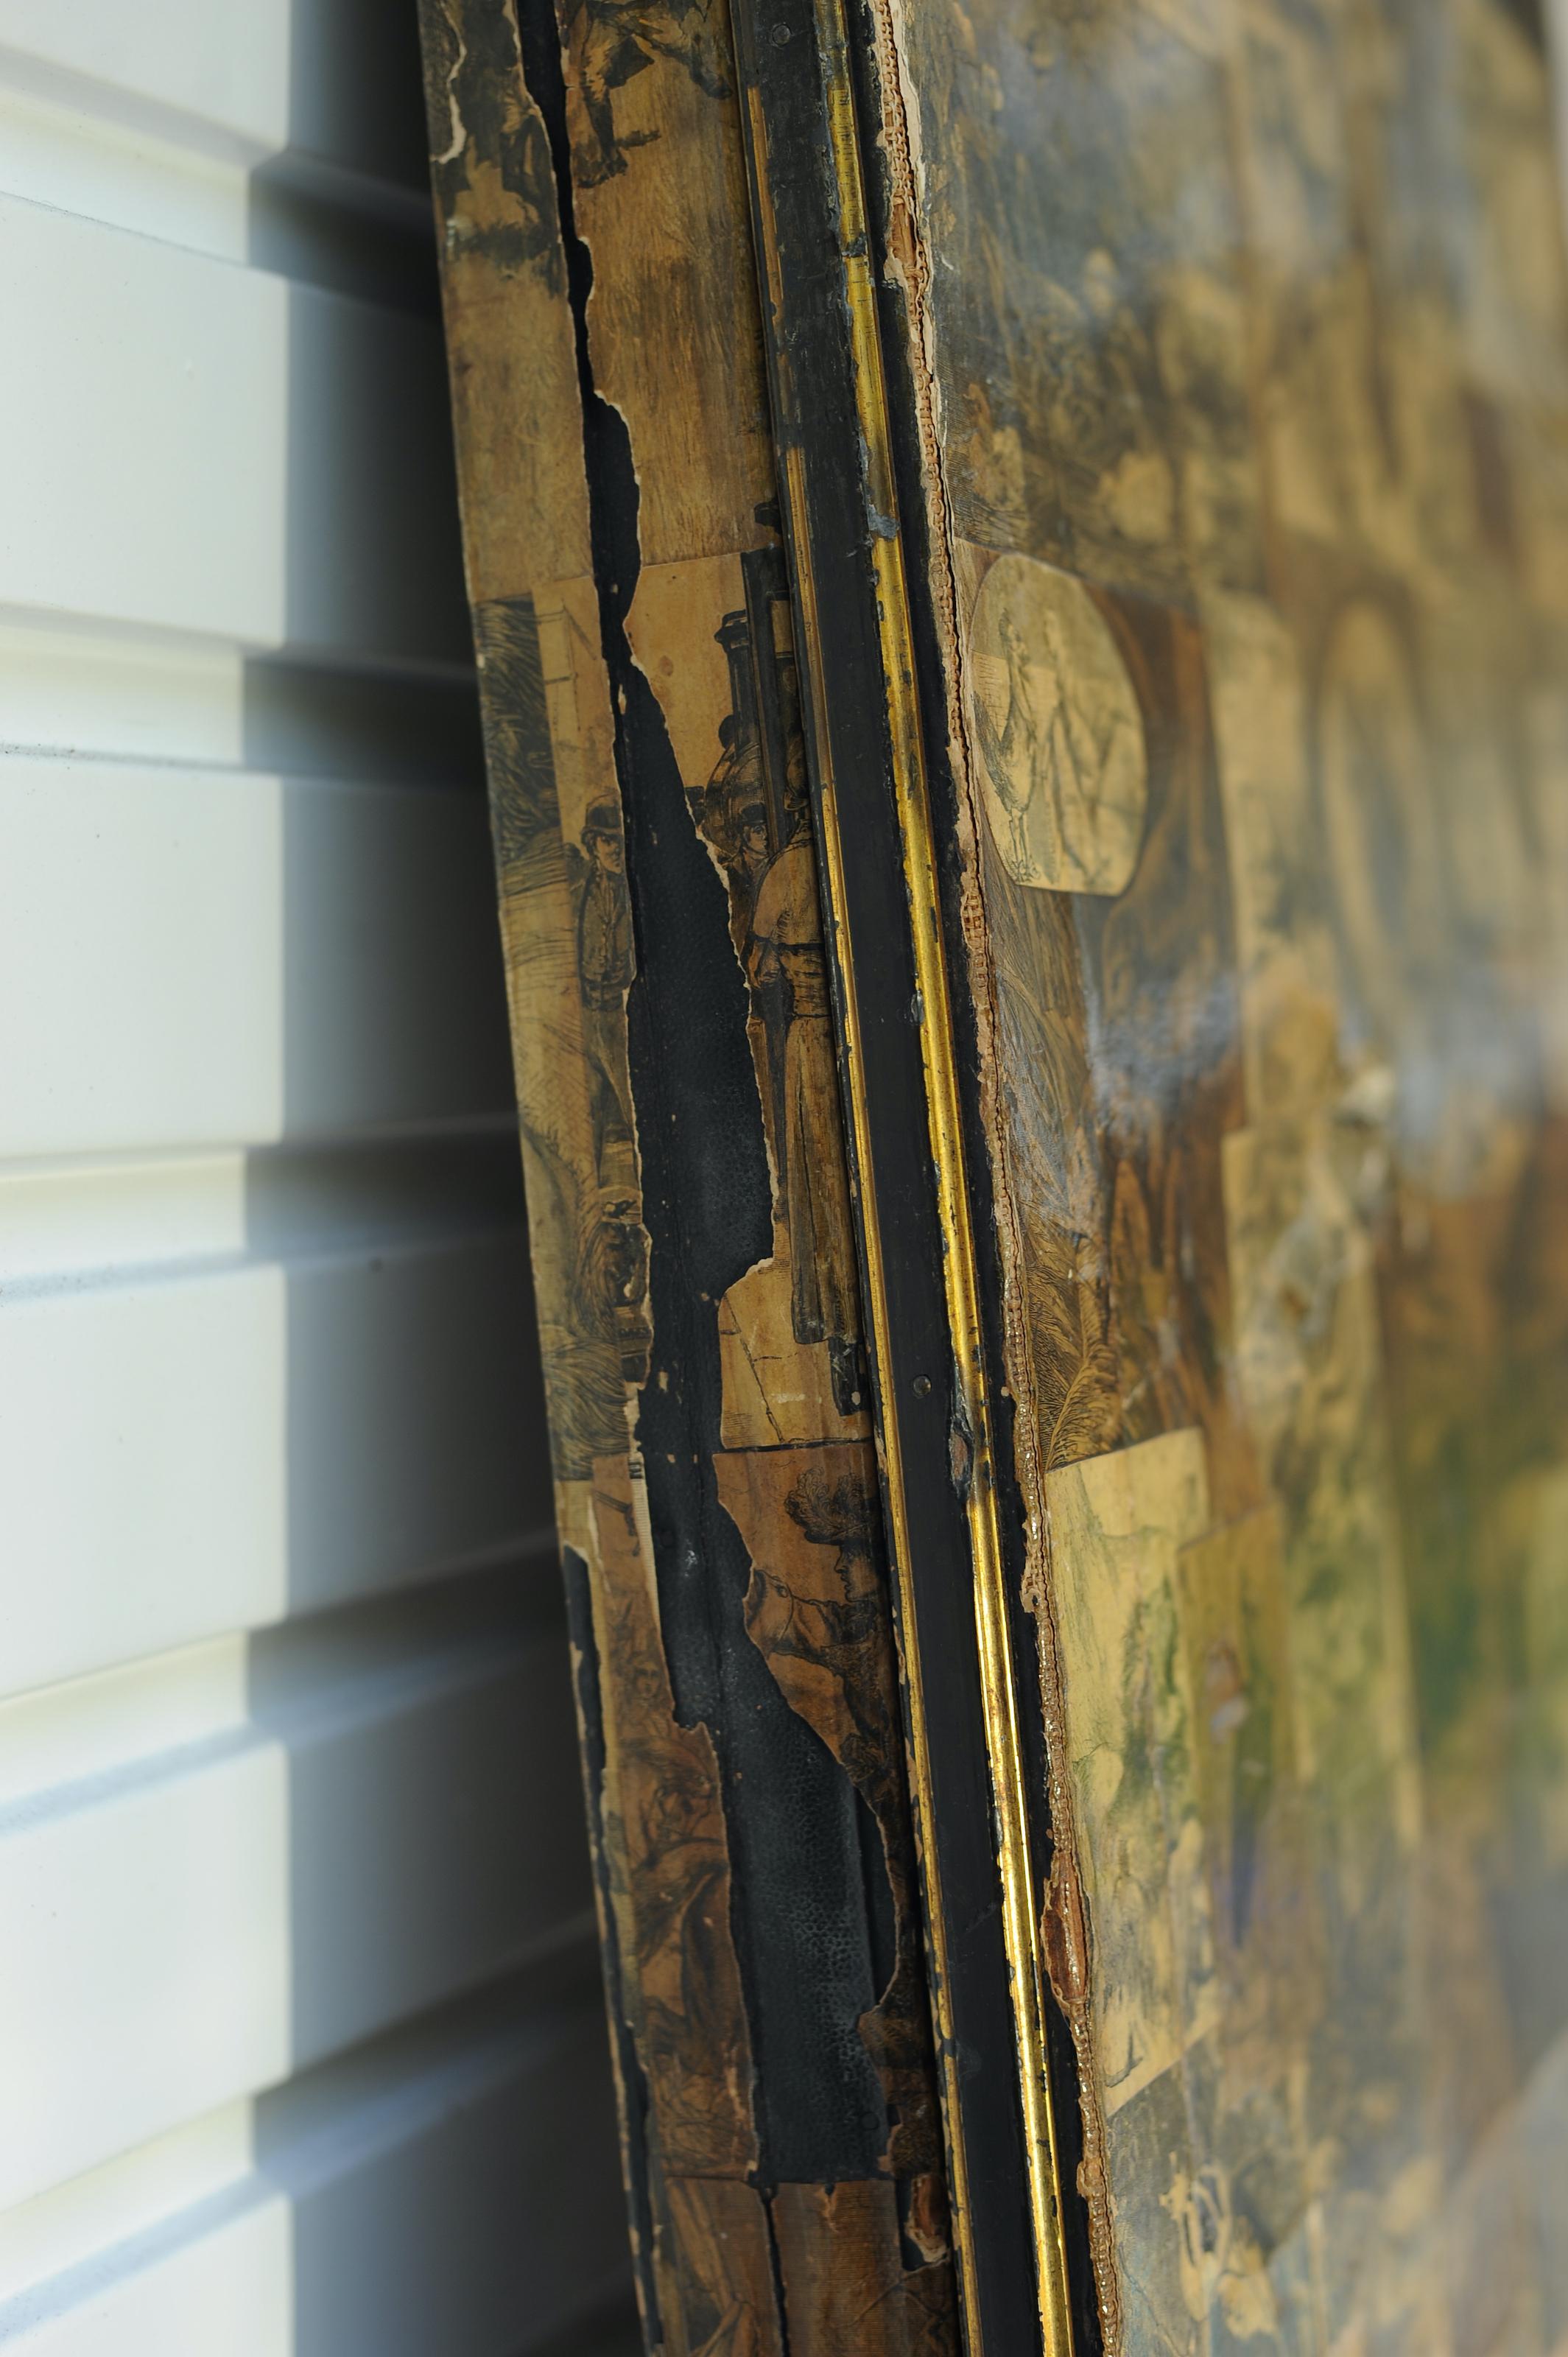 Viktorianische Sepia Decoupage zweiseitige drei Panel Folding Boudoir Ebonised Bildschirm mit Lederbindung 

Großer Paravent, der viktorianisches Leben und Gottheiten darstellt, im Originalzustand, mit handgemalter Decoupage.  

Ehemals im Besitz